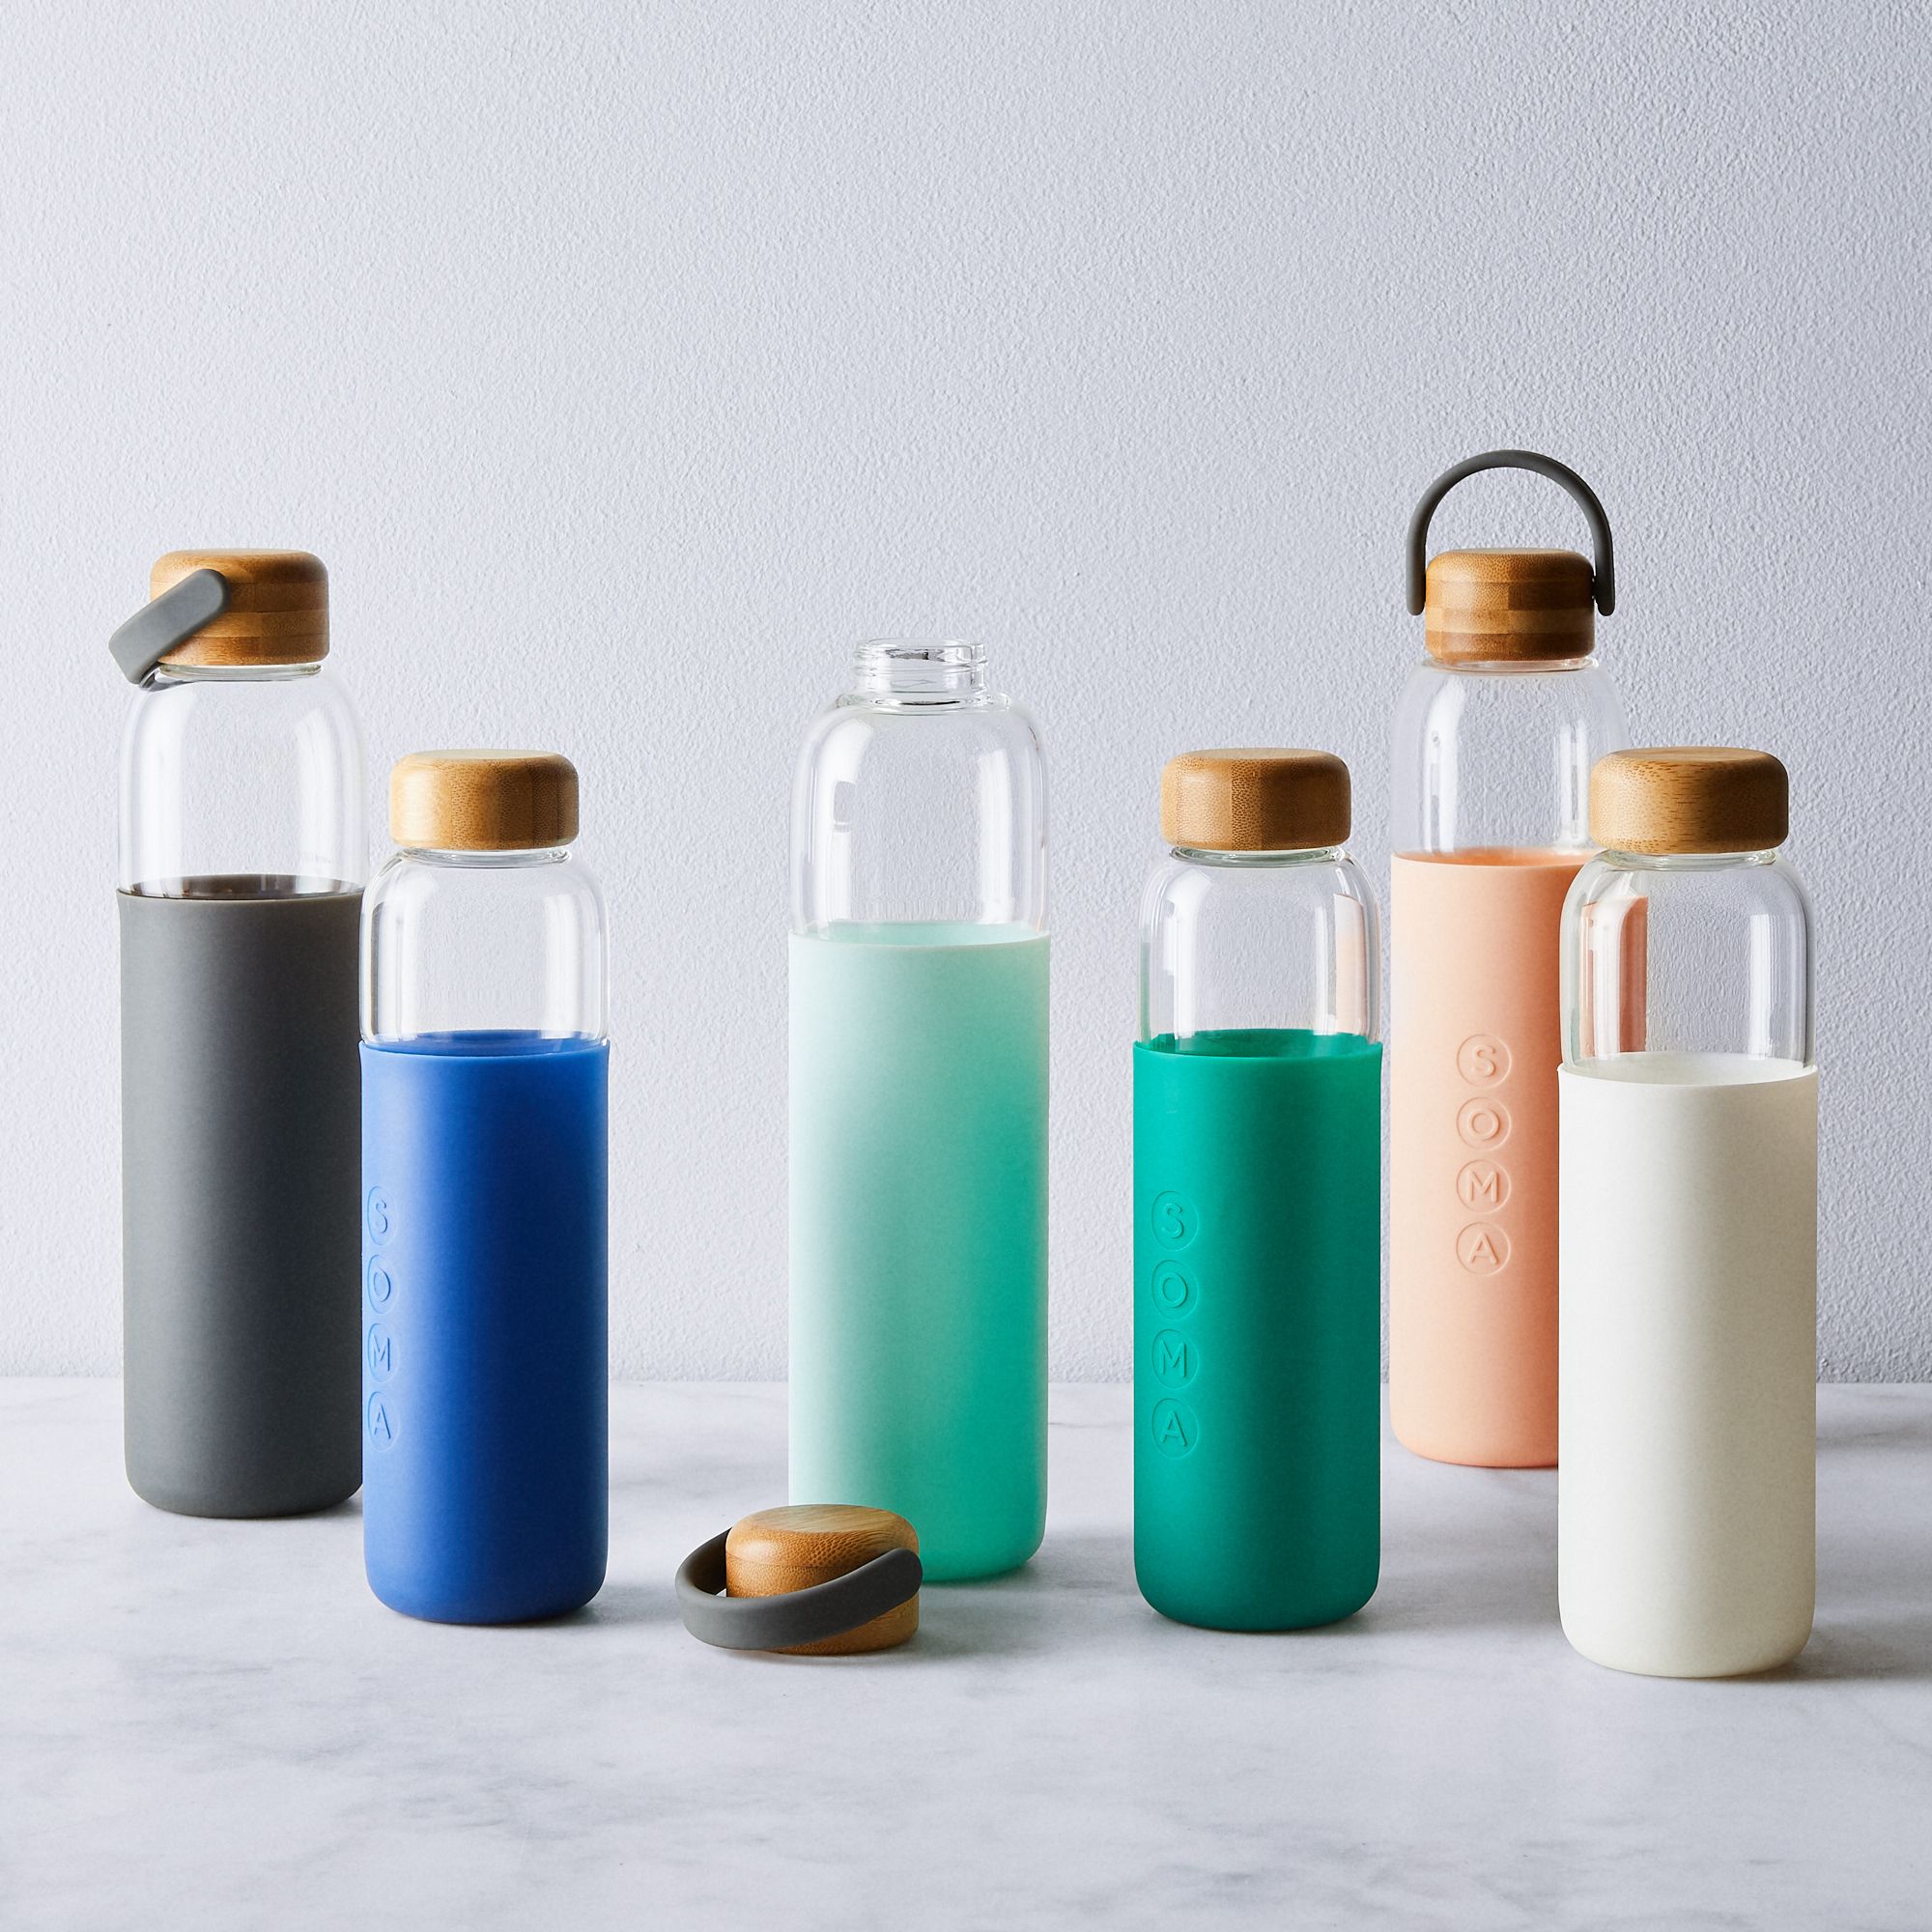 Botellas de plástico, ¿cómo se pueden prensar? - Internaco Medio Ambiente